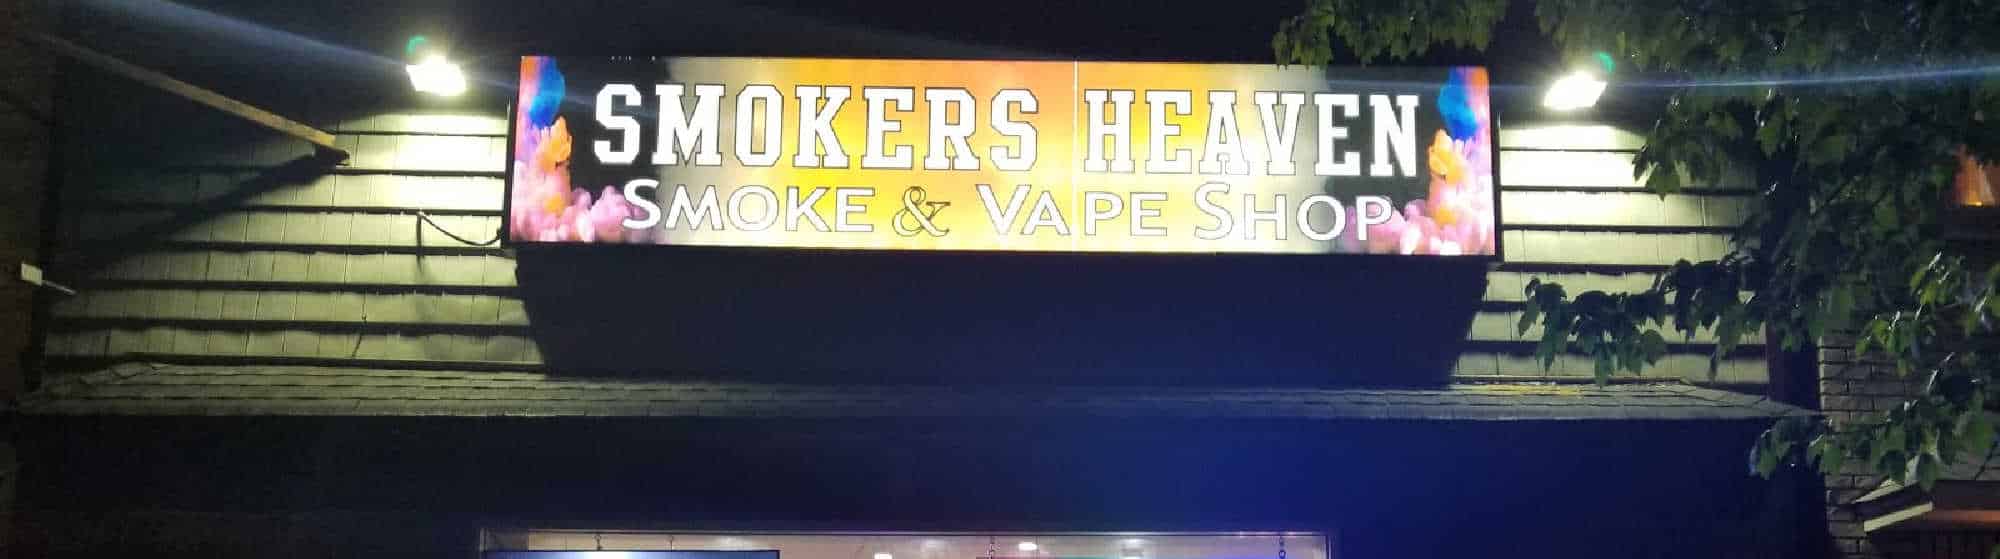 image of sokers heaven smoke & vape shop in bayonne nj